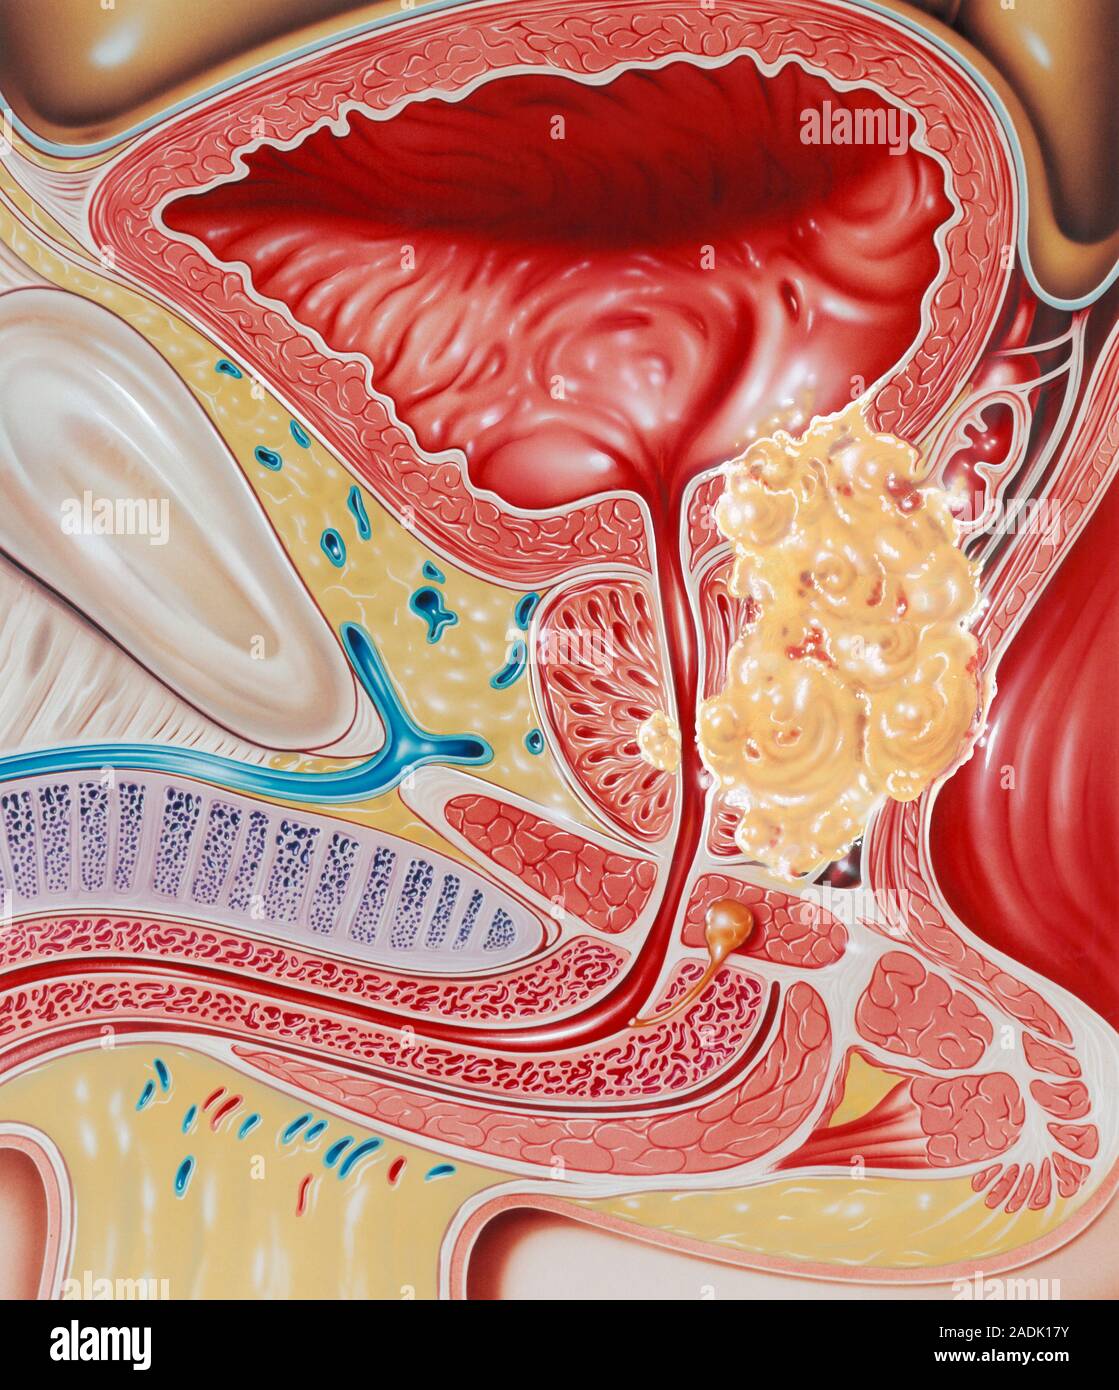 Онкологии предстательной железы у мужчин. Предстательная железа, Prostata. Карцинома предстательной железы. Мочевой пузырь. Простата у мужчин.